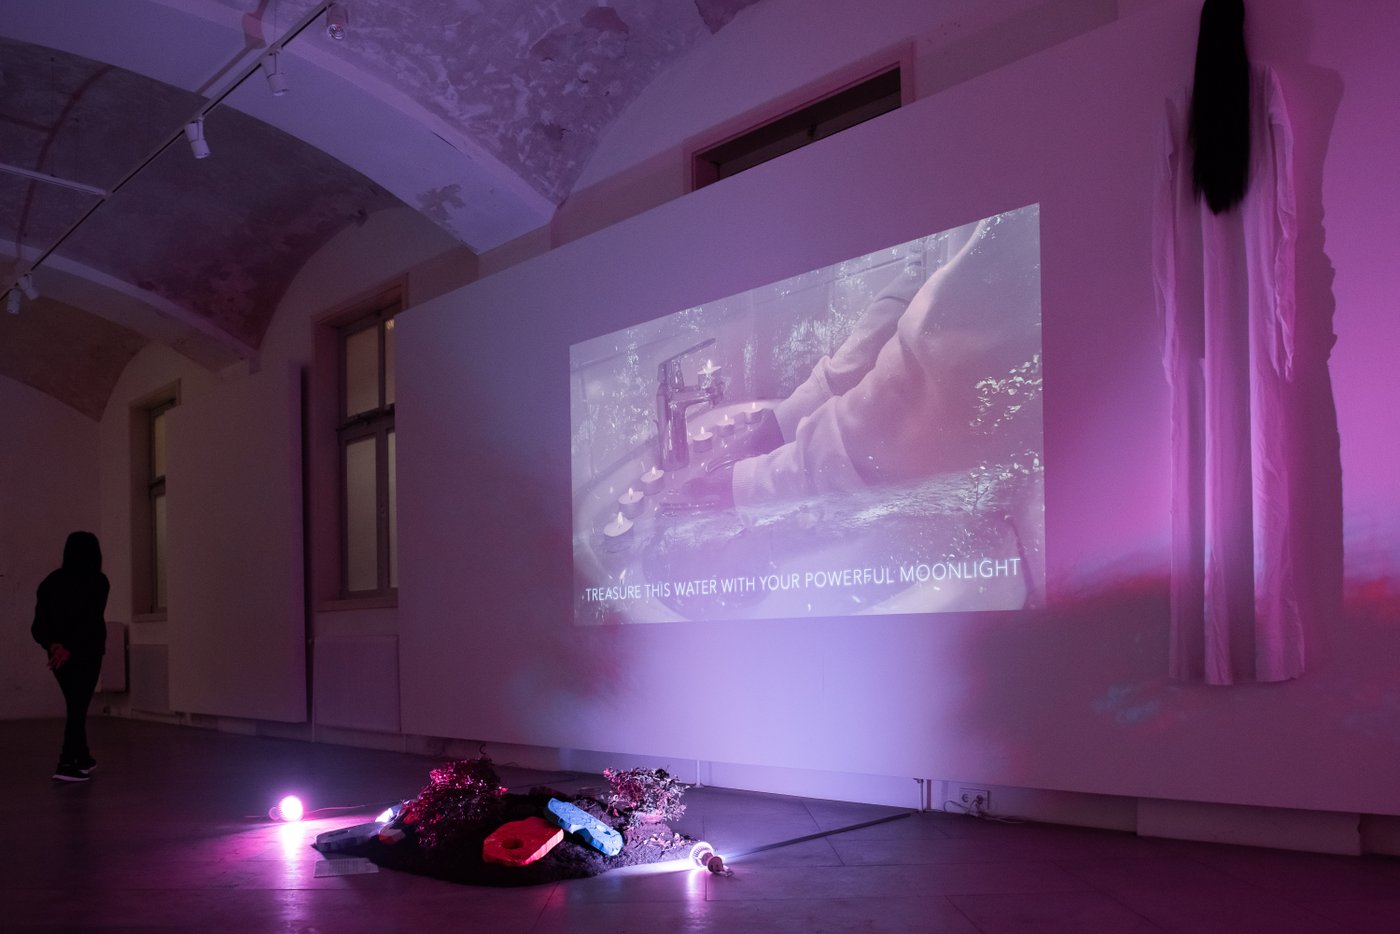 Ausstellungsansicht, Stil von einem Video, der Raum ist in rosa farben beleuchtet